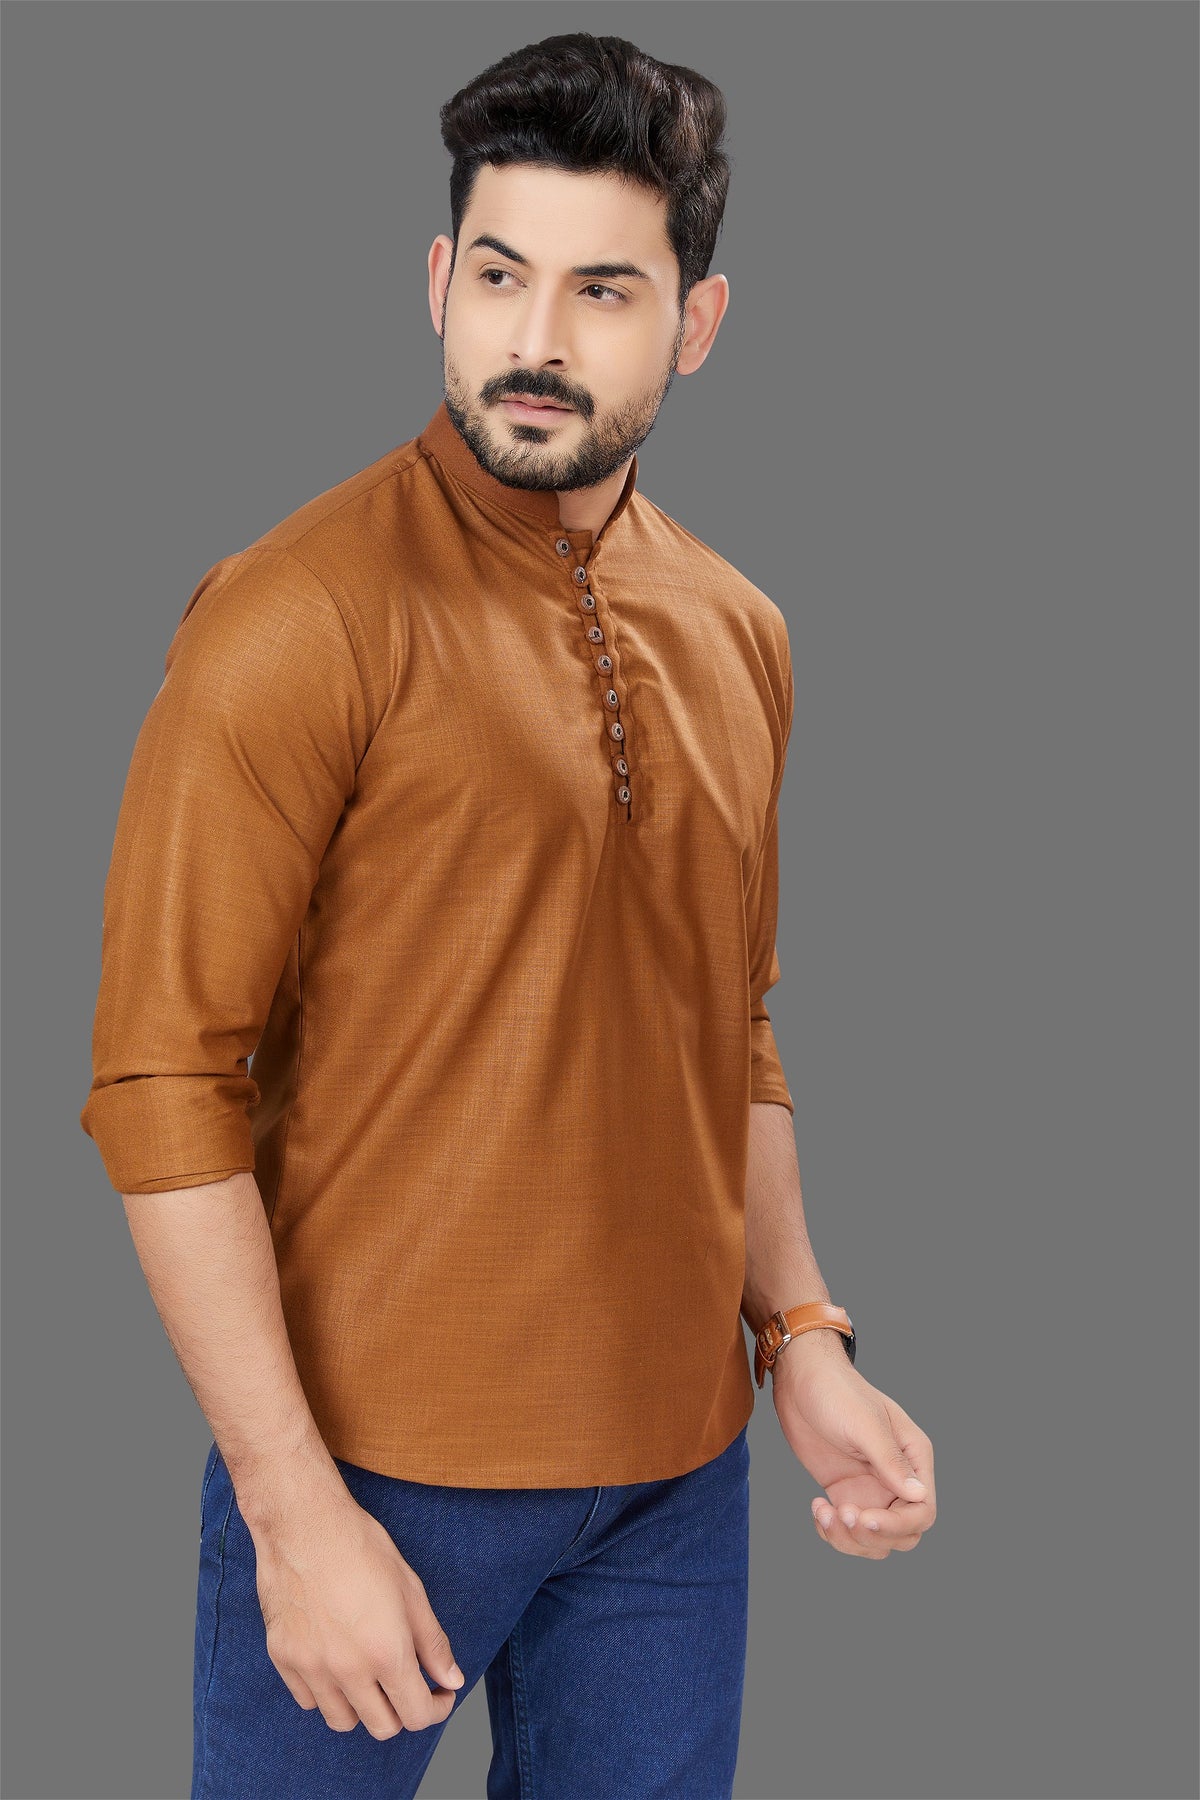 Light Brown short kurta - BUYZ.IN | Trendsetter Men's wear